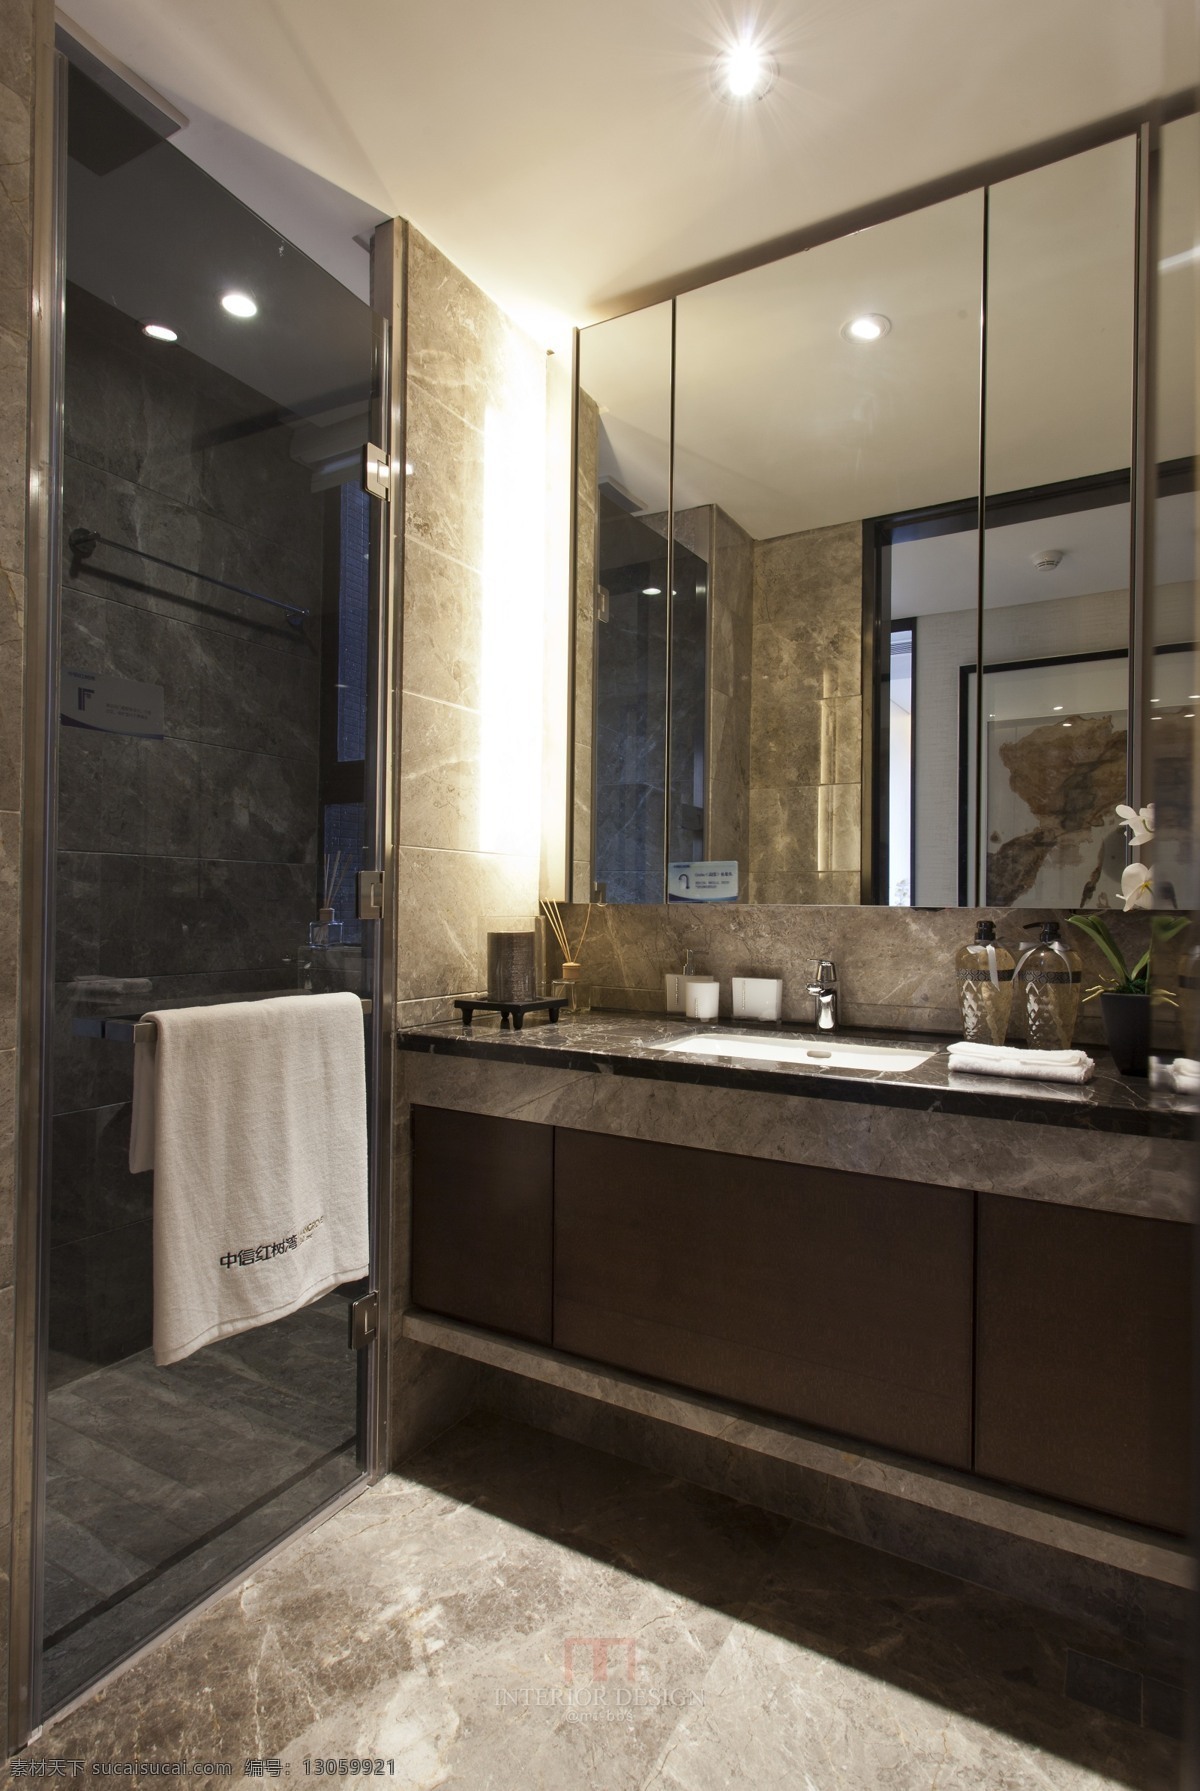 现代 时尚 浴室 深色 瓷砖 背景 墙 室内装修 效果图 浴室装修 瓷砖地板 深色洗手台 方形镜子